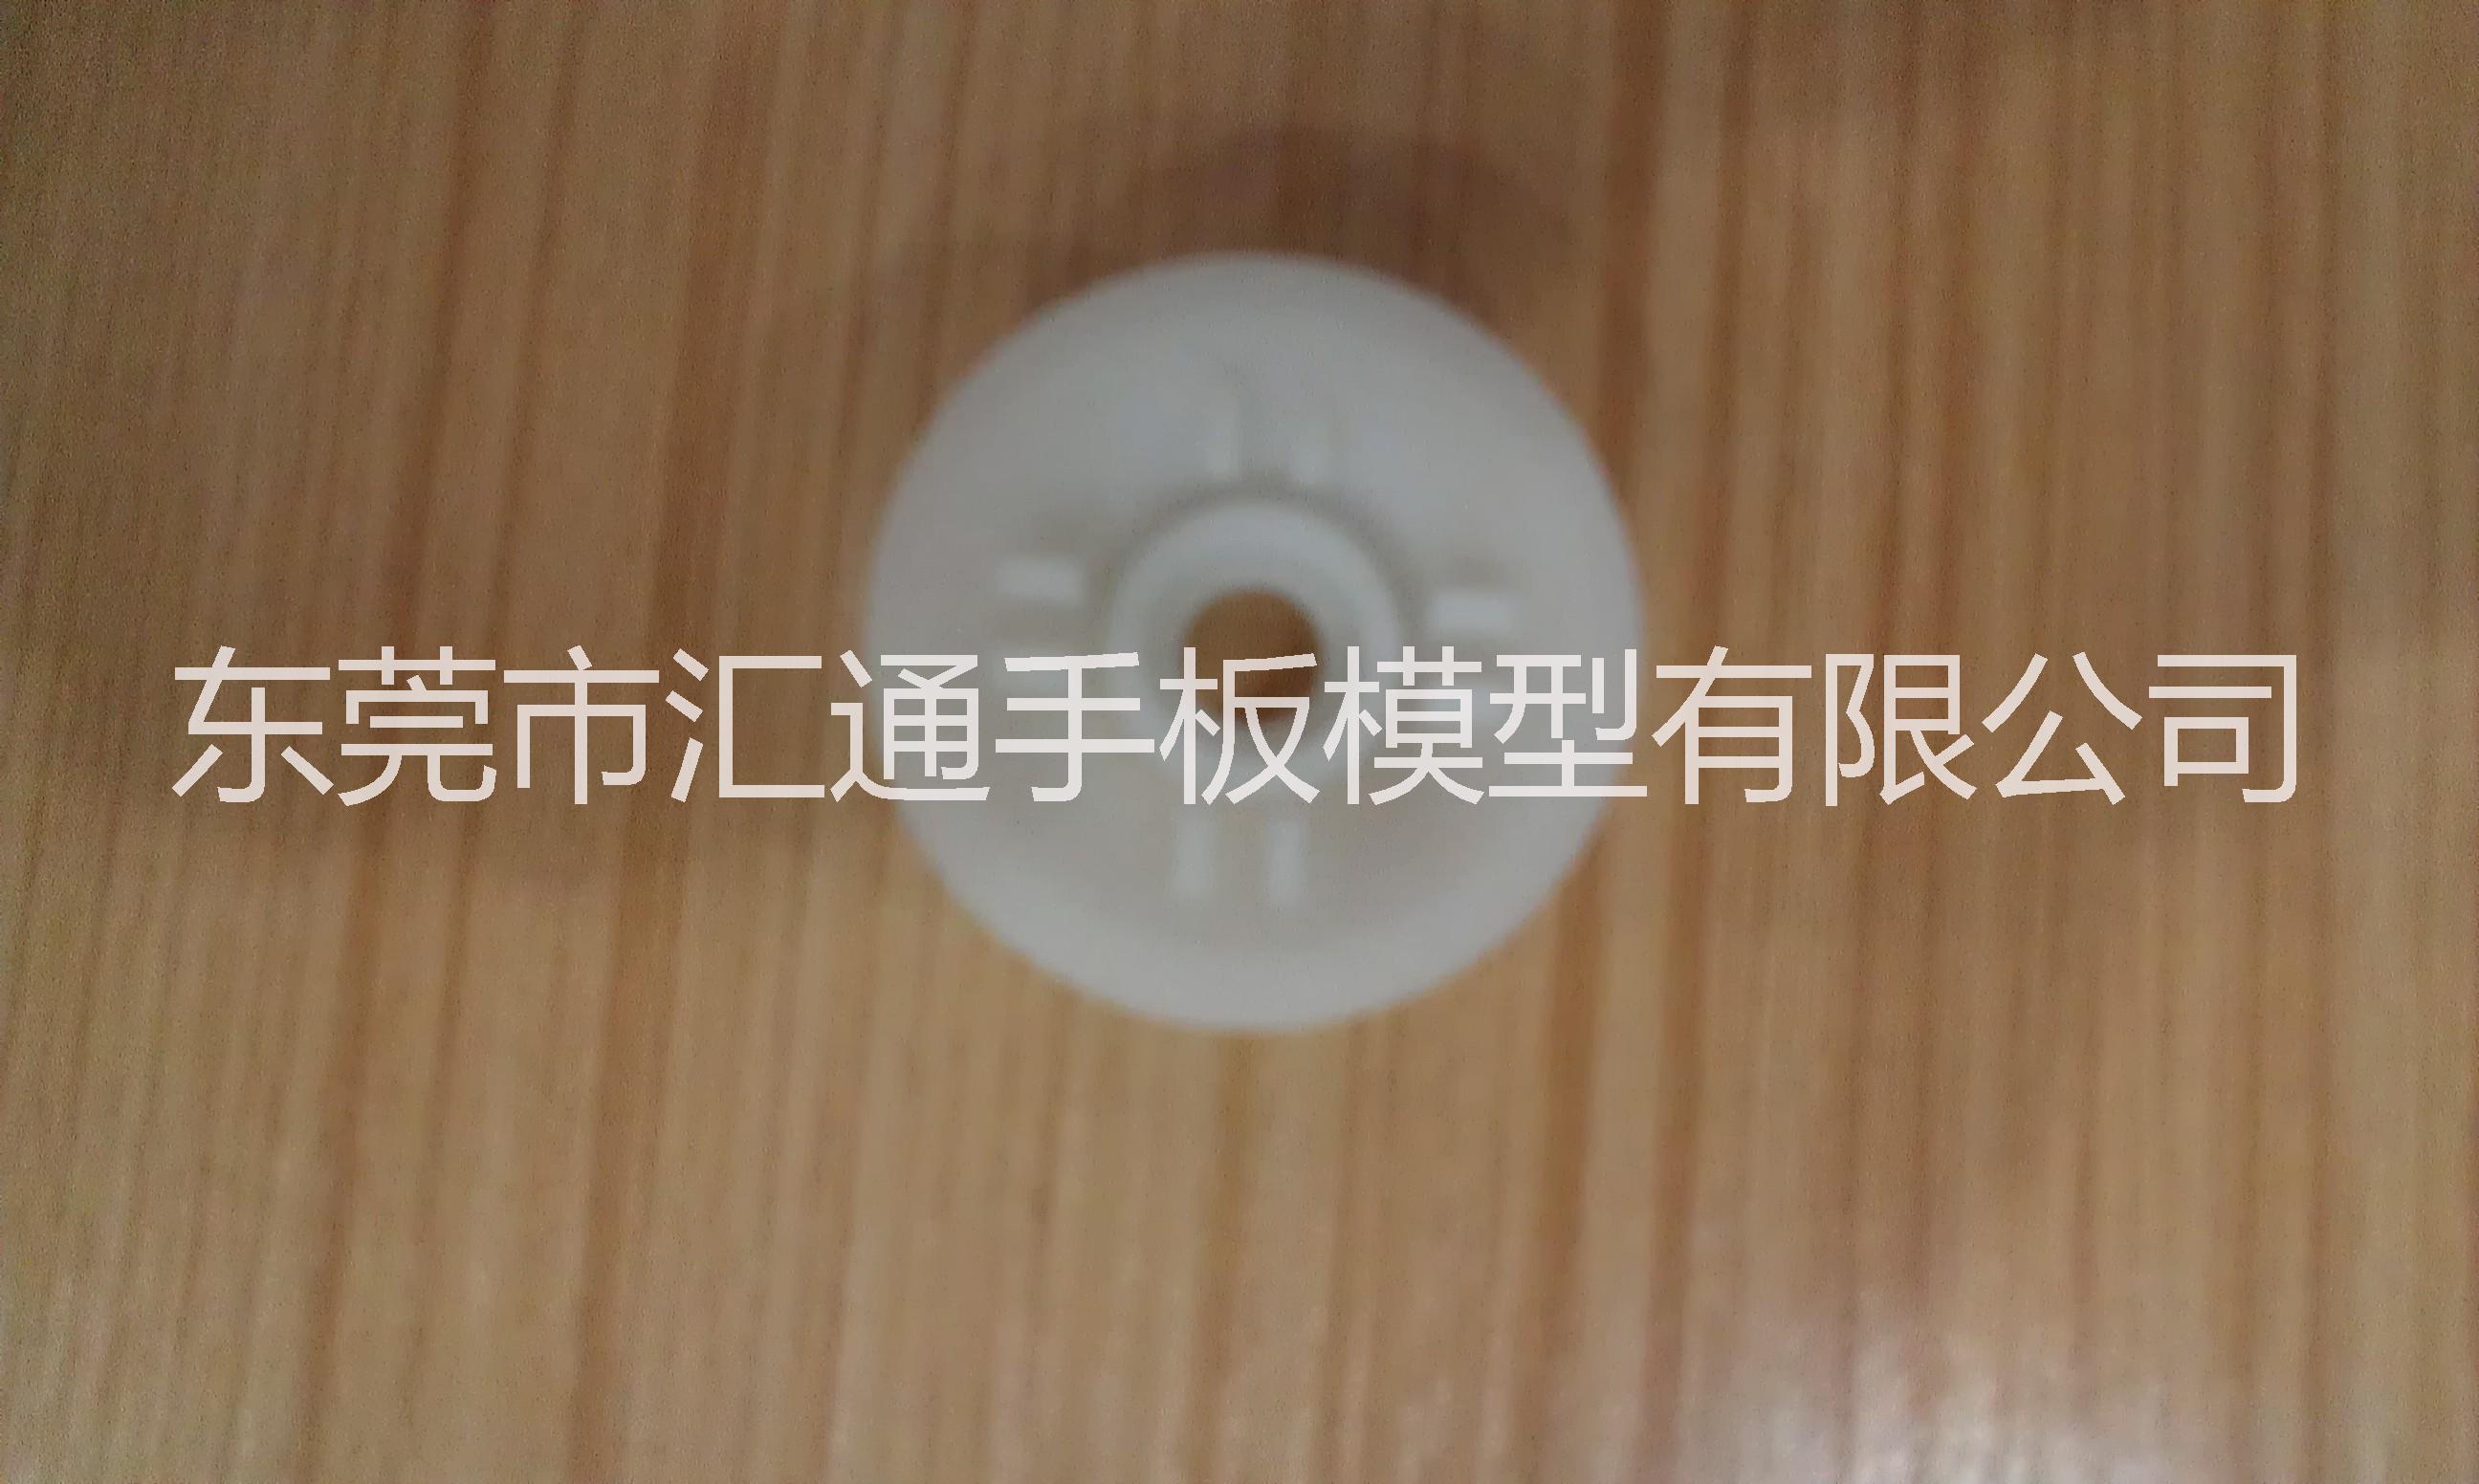 手板模具 上海3d打印服务 3d打印亚克力 钣金手板模型制作